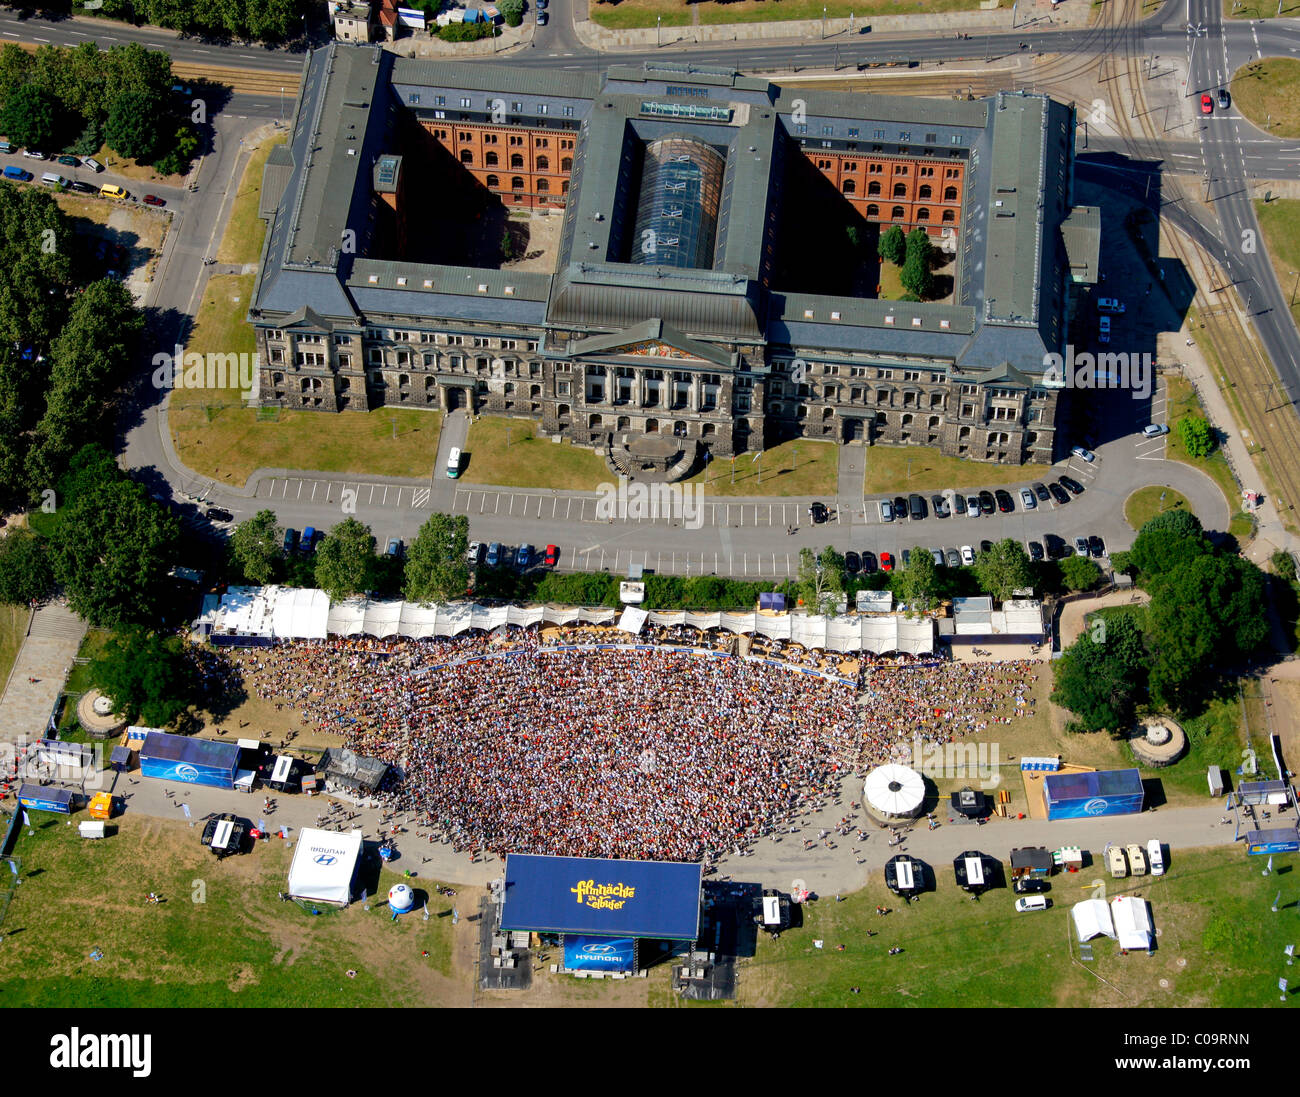 Luftaufnahme, Fußball-Weltmeisterschaft 2010, öffentliche Vorführung in Dresden, Sachsen, Deutschland, Europa Stockfoto